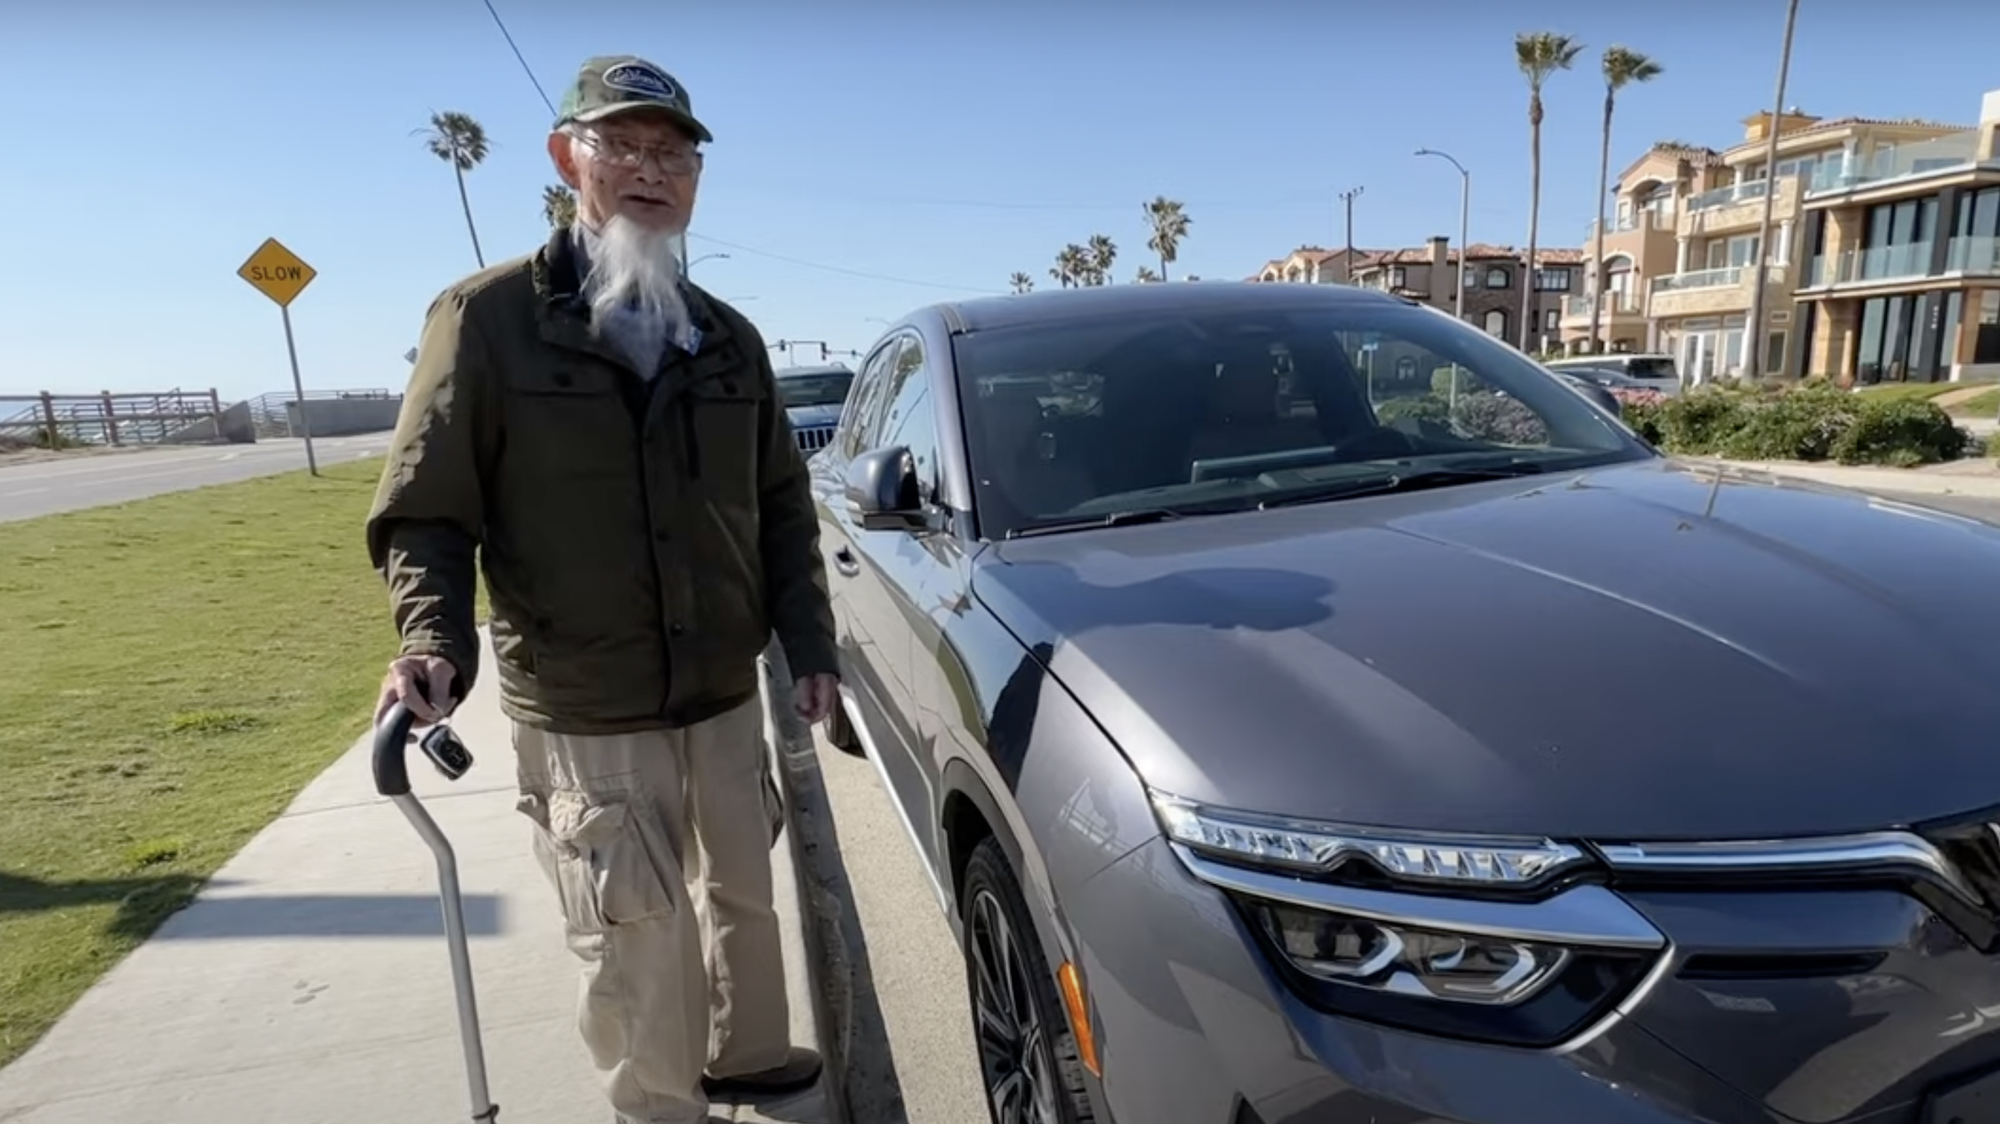 Cụ ông 90 tuổi chống gậy cầm lái VinFast VF 8: ‘Công nghệ như xe Mỹ, vỏ chắc hơn xe Nhật, cách làm thị trường thông minh, khác kiểu Nhật, Hàn’